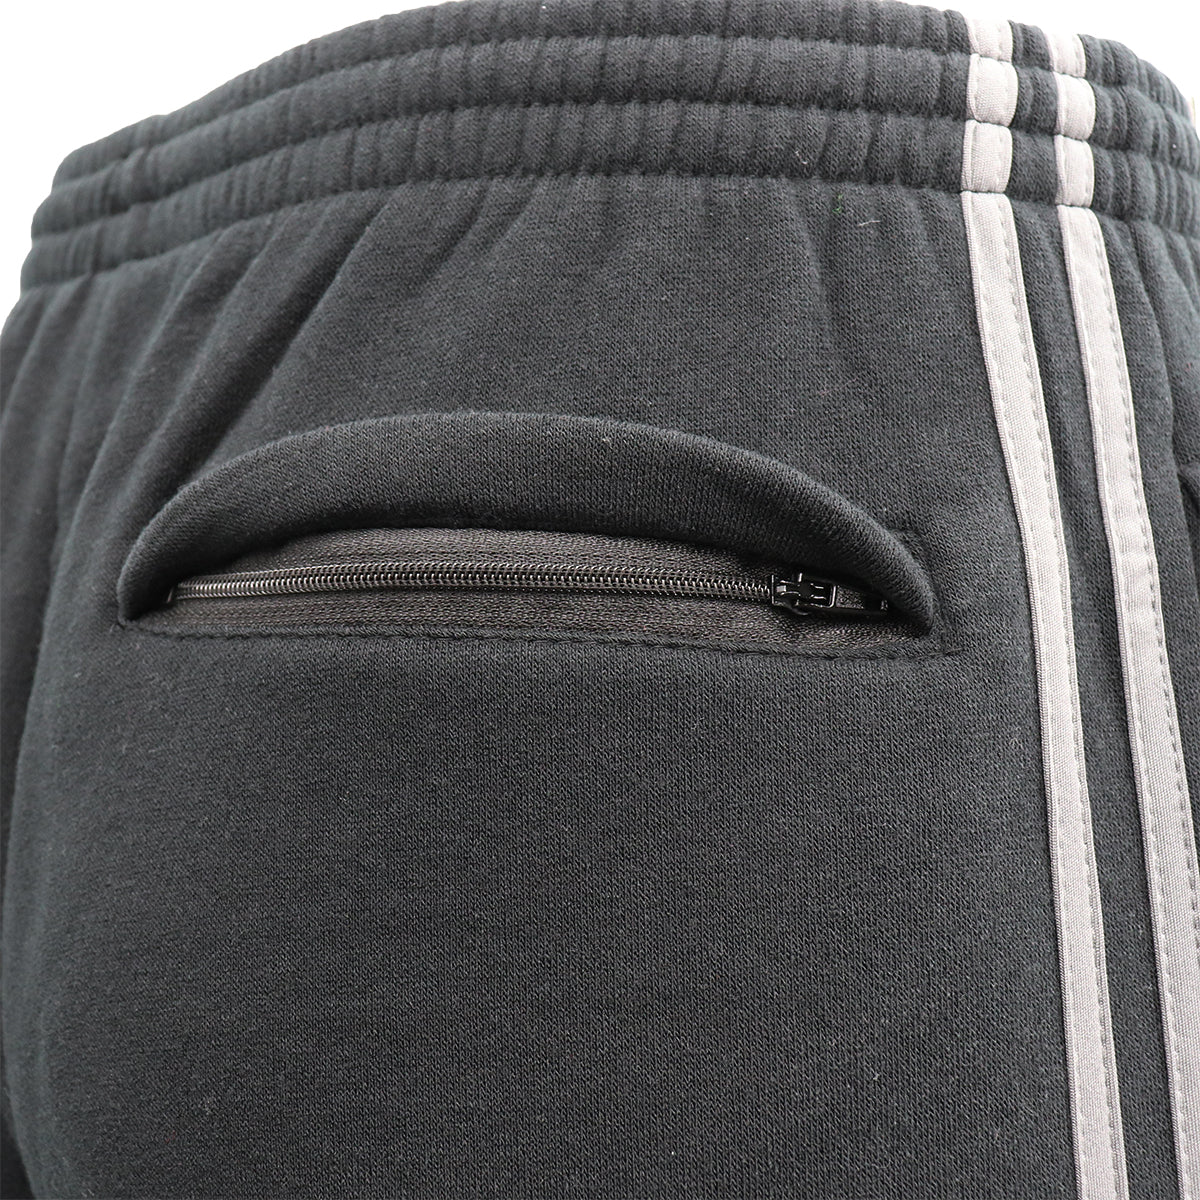 Men's Fleece Casual Sports Track Pants w Zip Pocket Striped Sweat Trousers S-6XL, Dark Grey, S